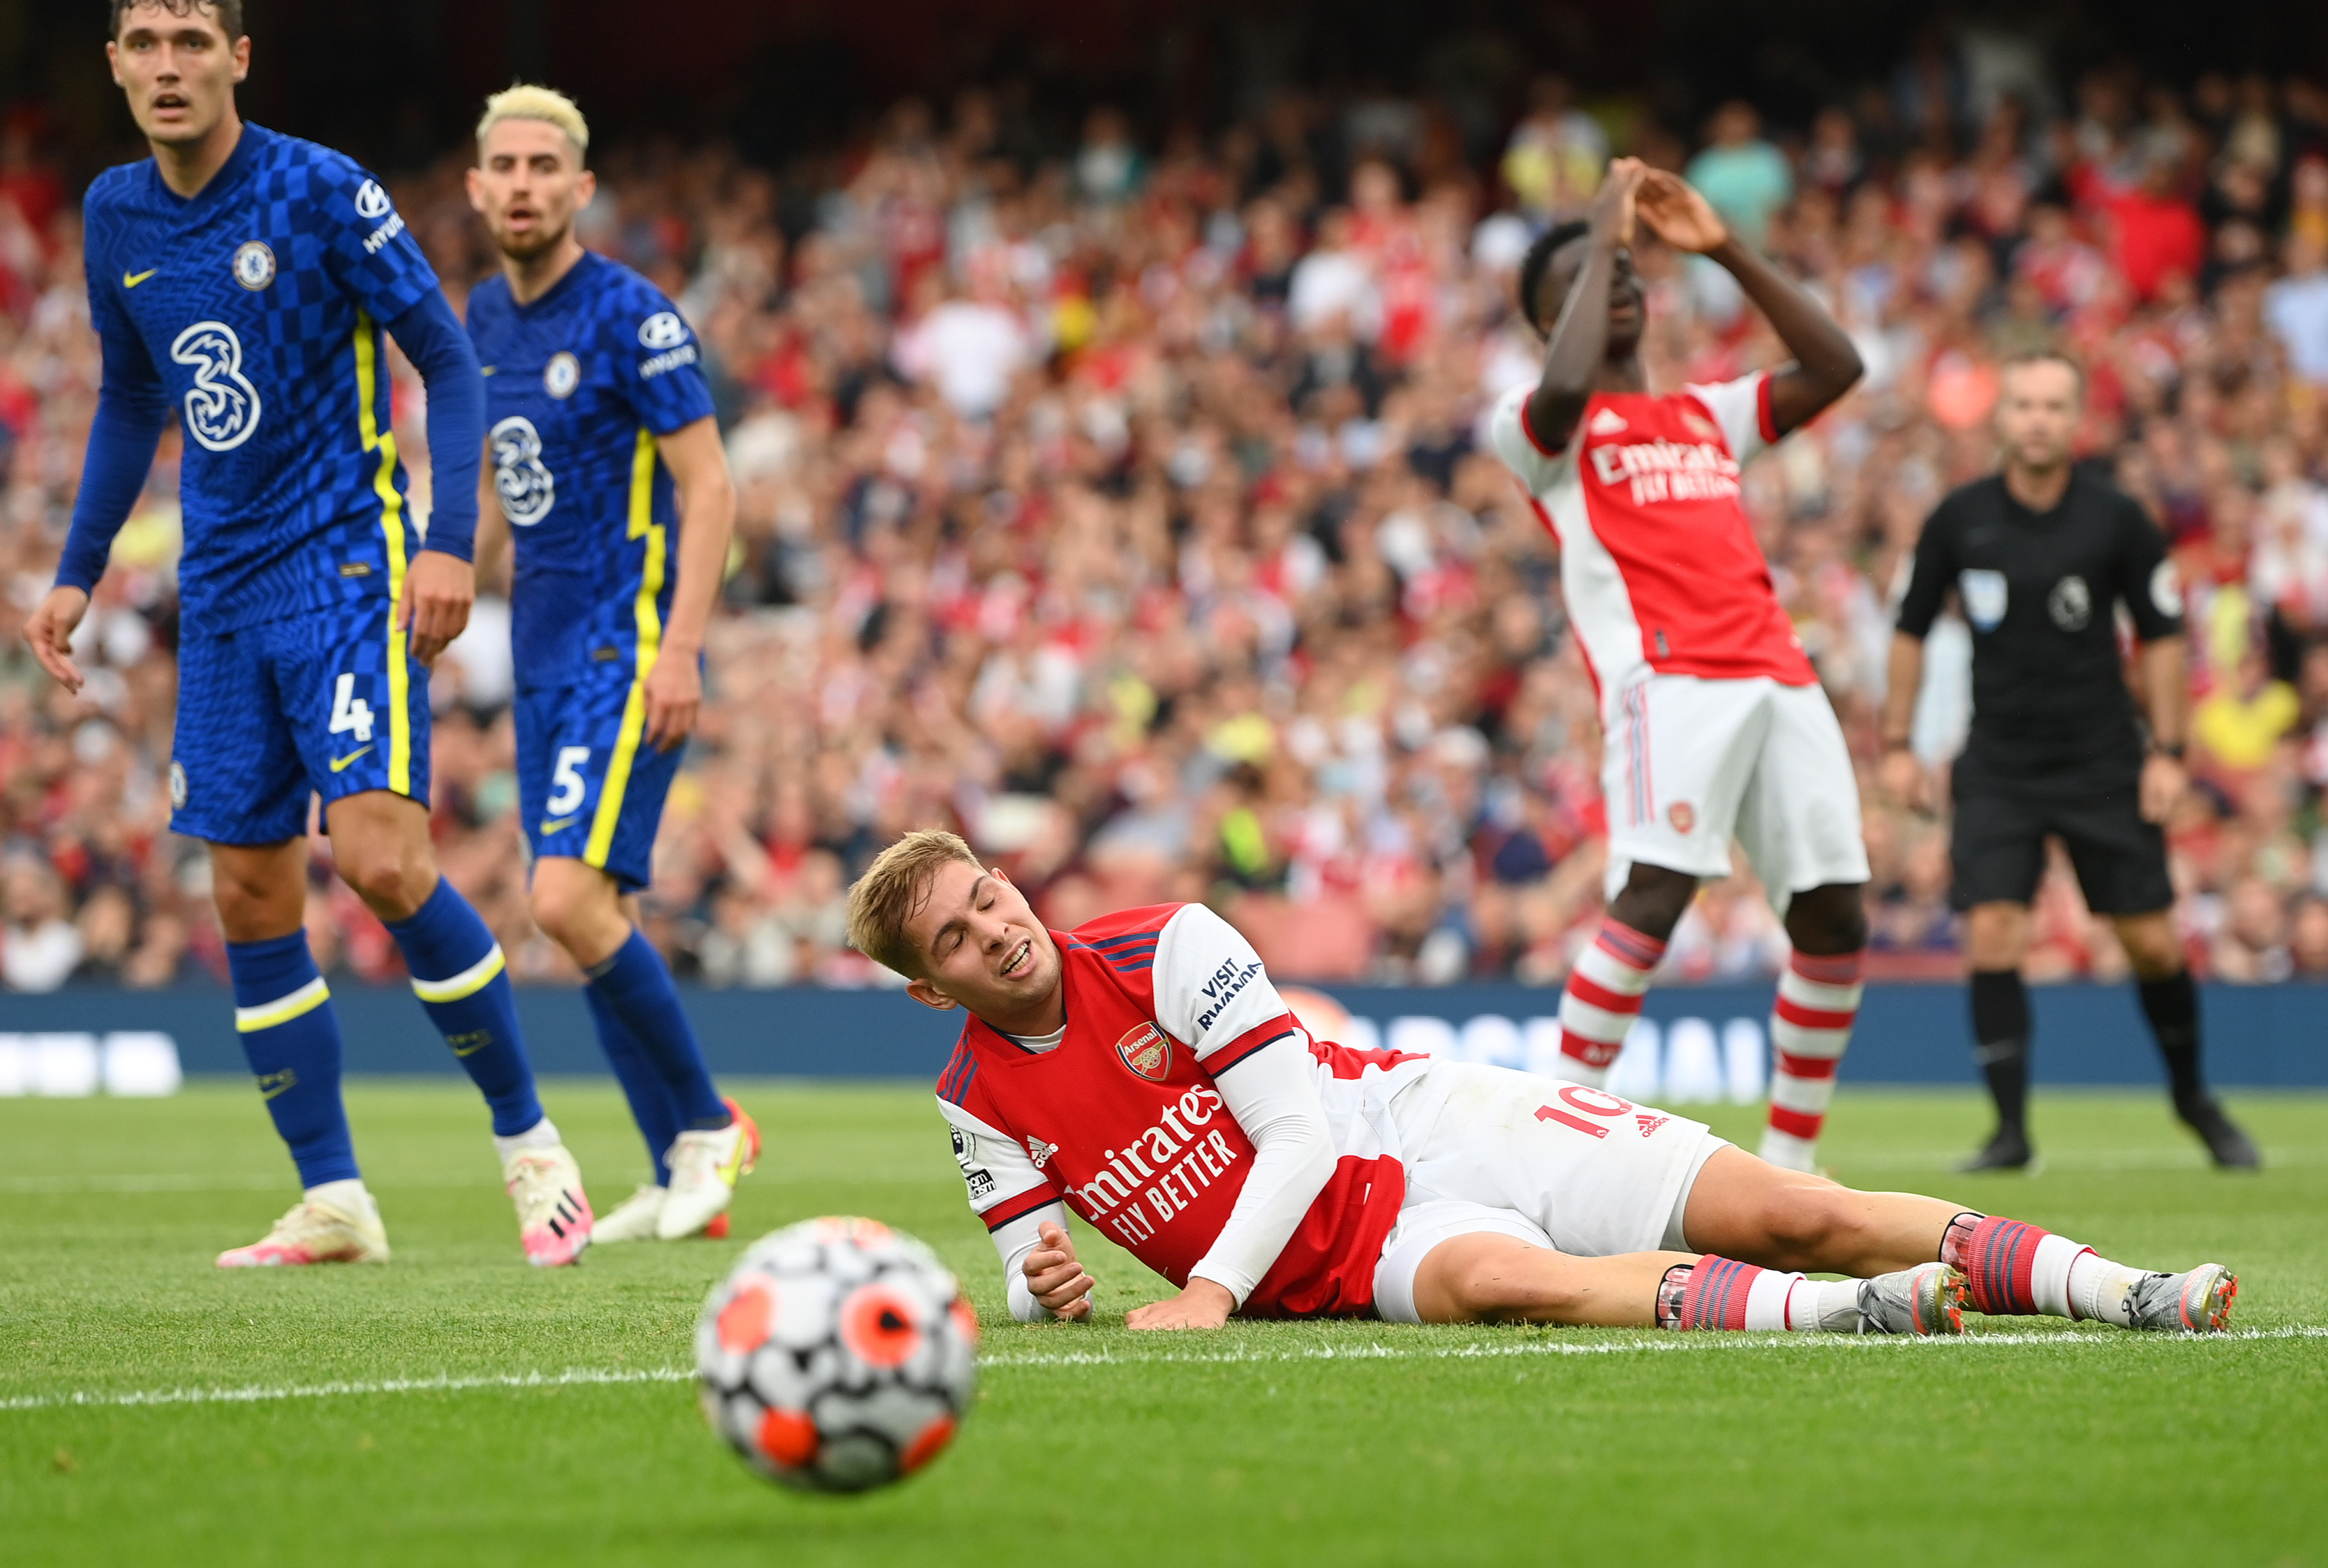 Chelsea vs Arsenal preview Wednesdays Premier League clash